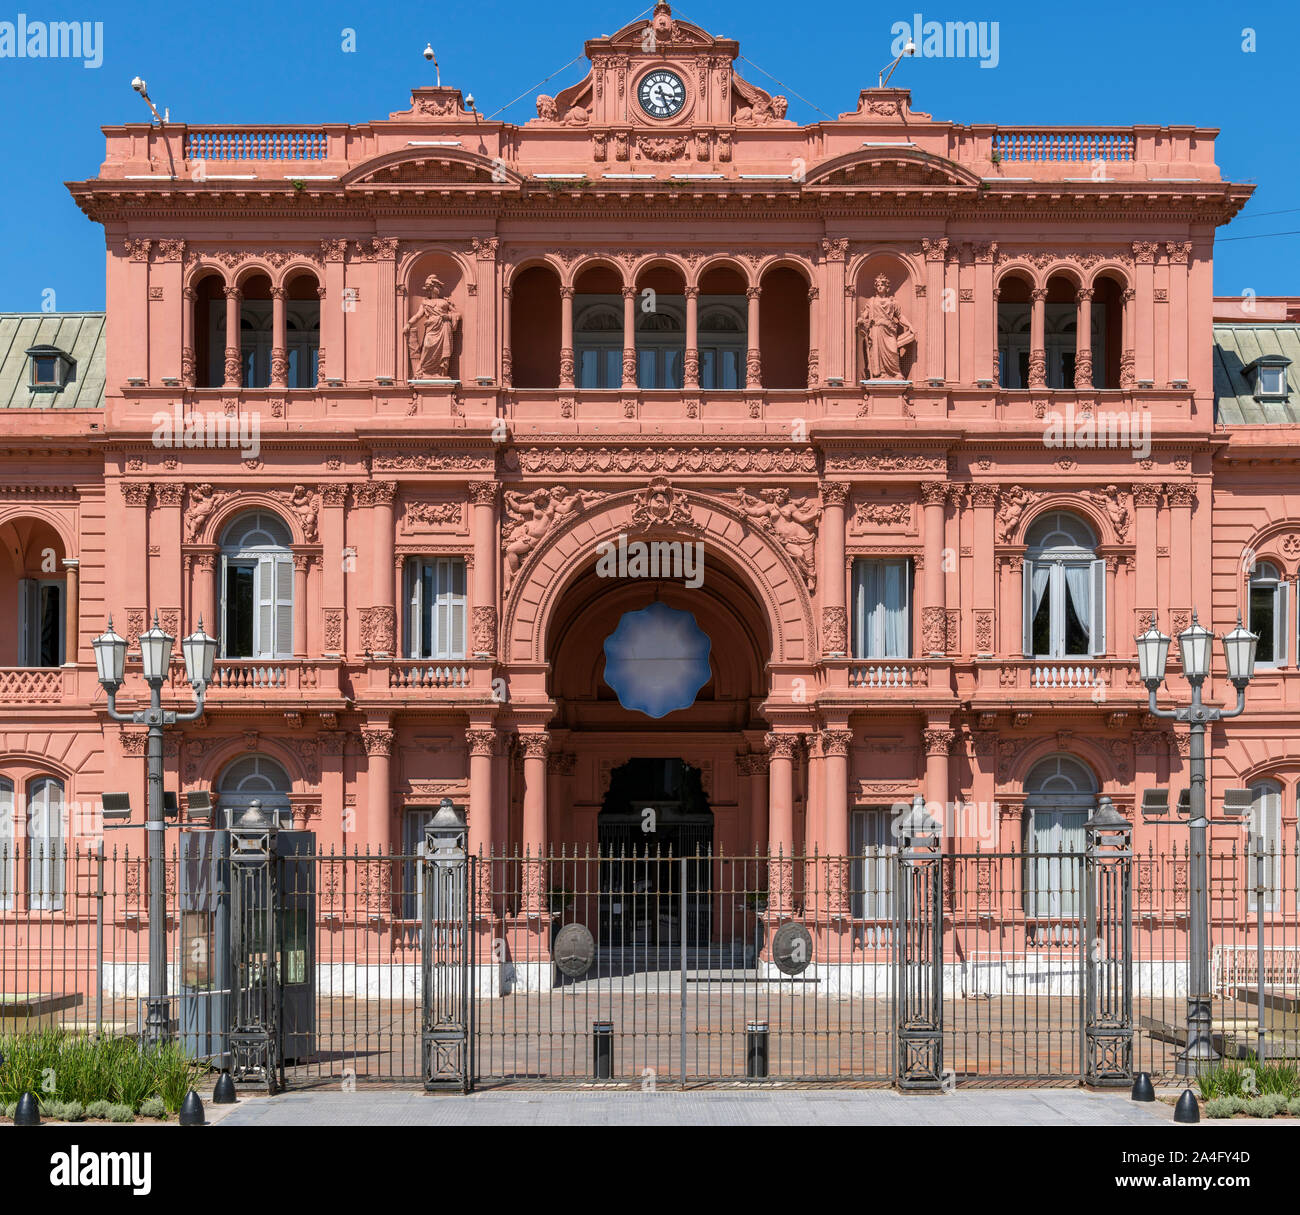 Entrée de la Casa Rosada (Maison Rose), bureau du président argentin, Plaza de Mayo, Buenos Aires, Argentine Banque D'Images